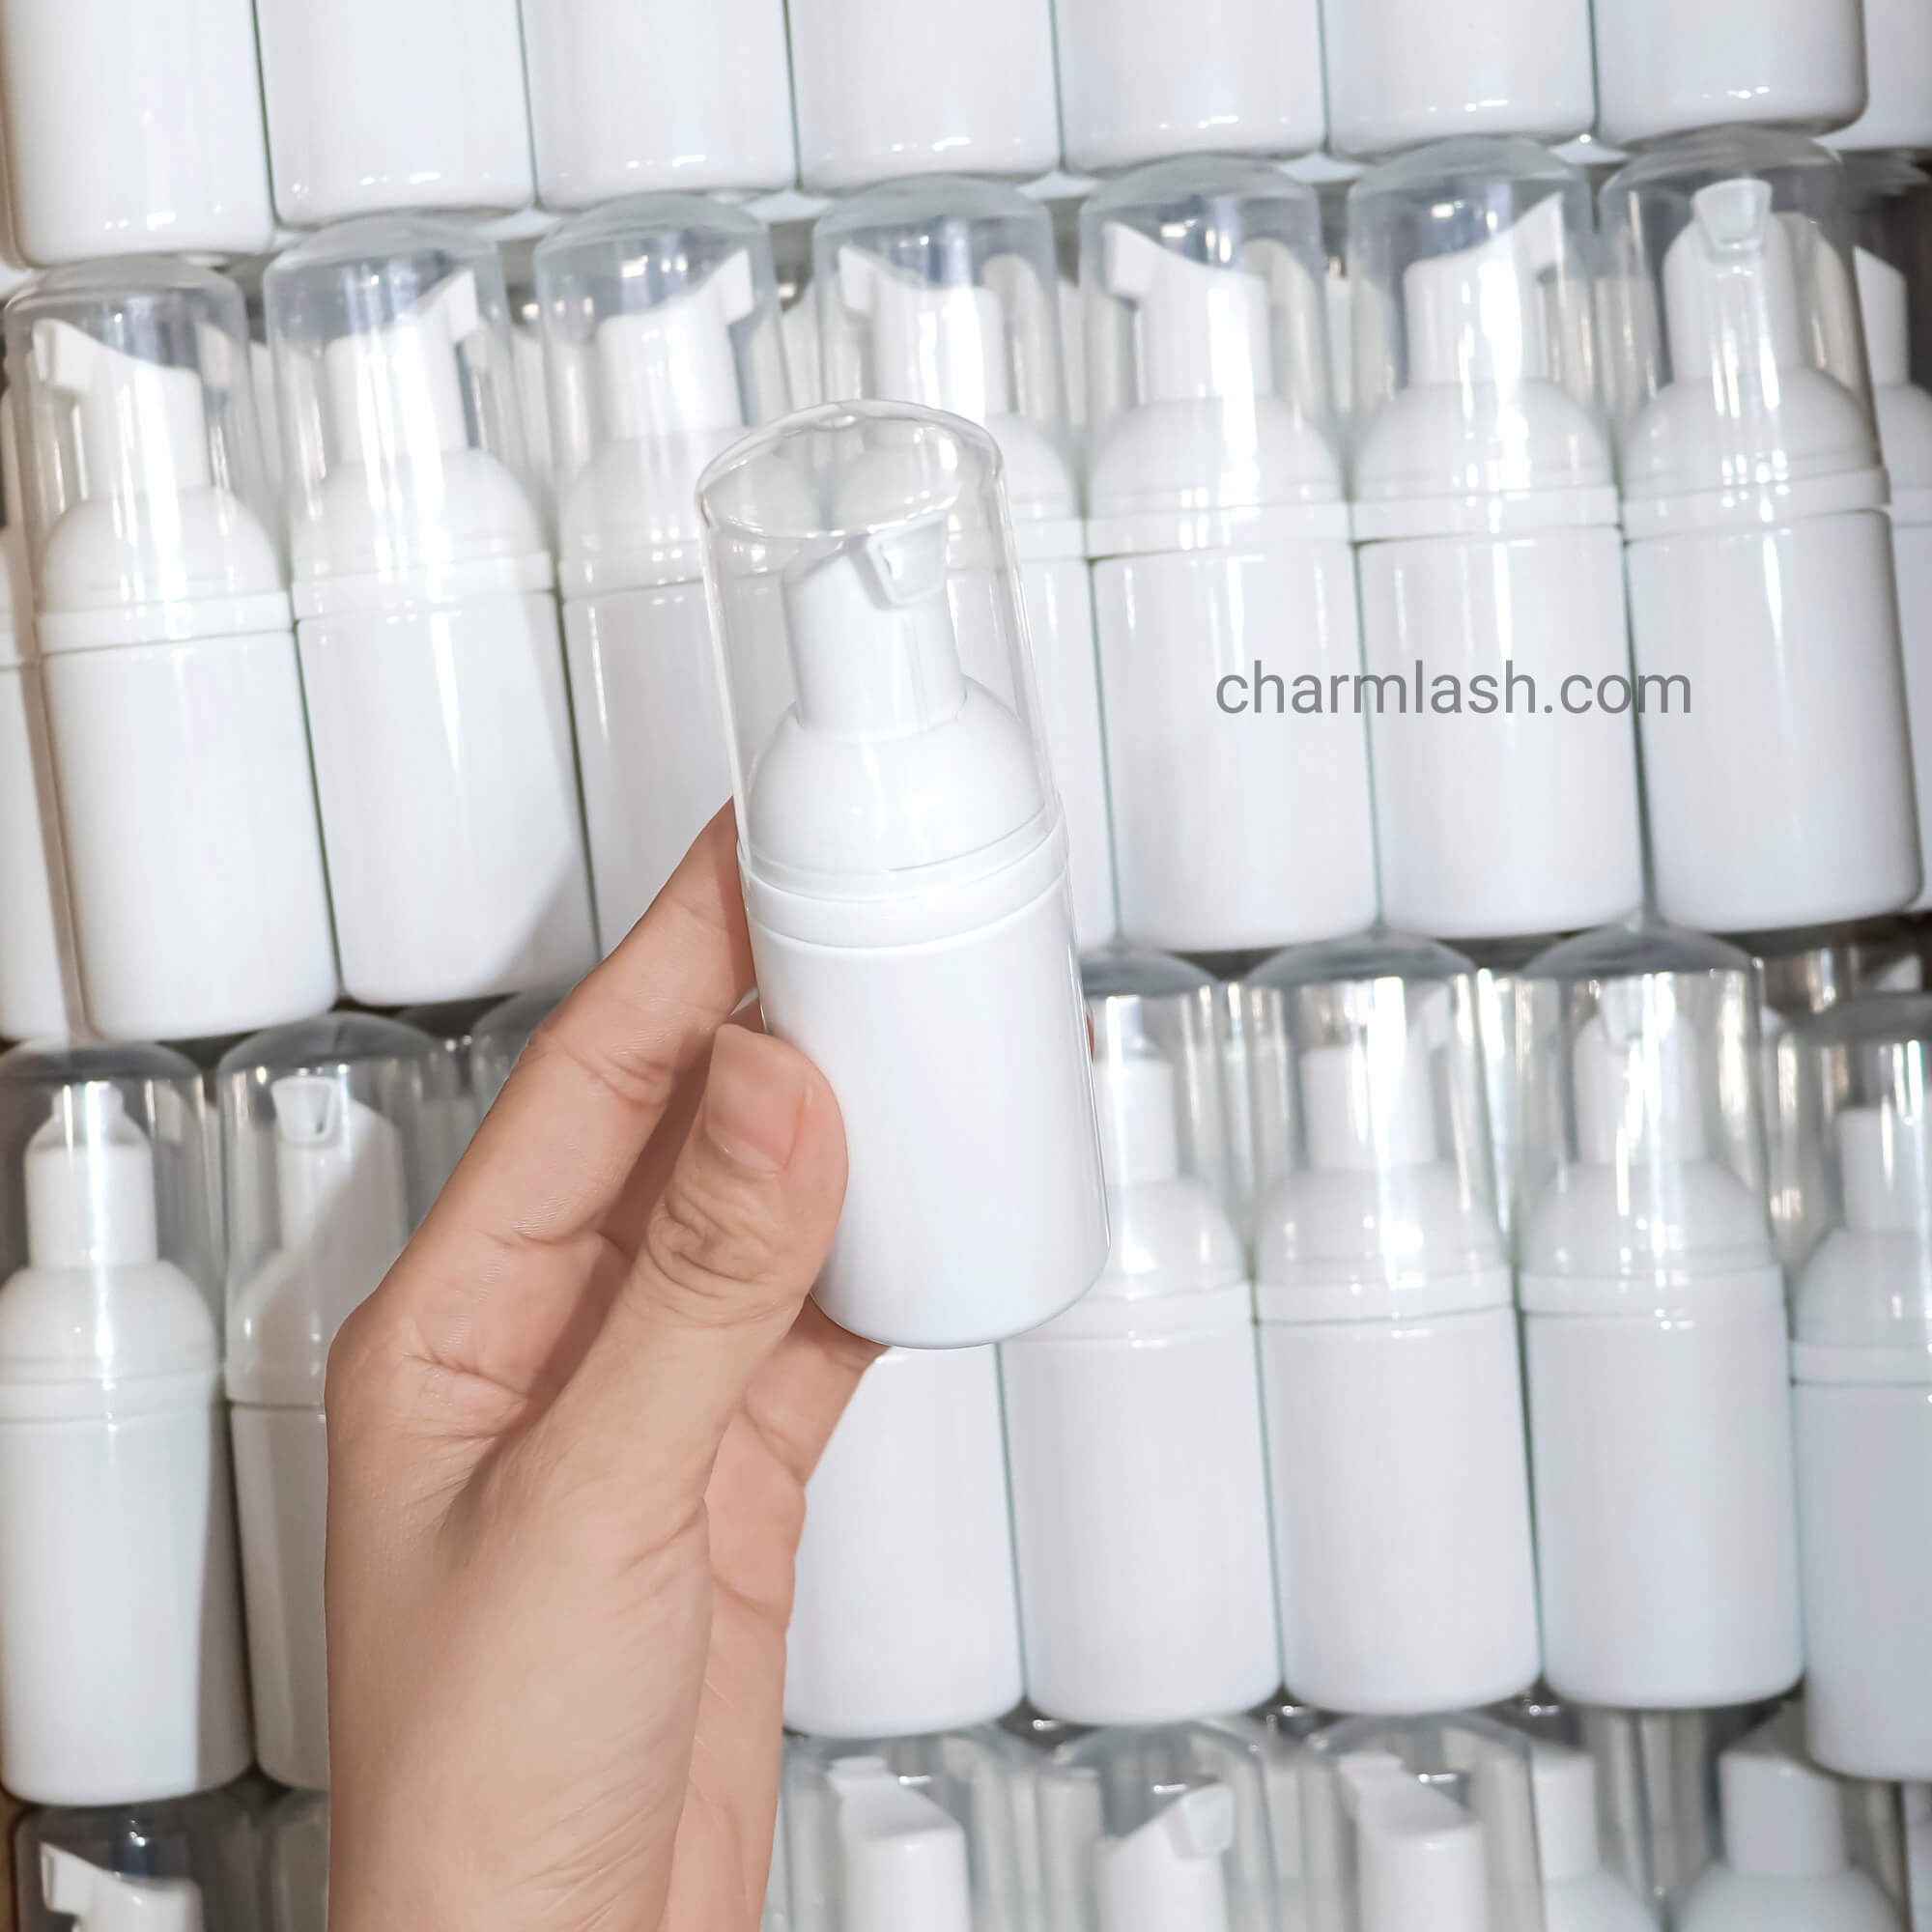 lash-shampoo-bottles-wholesale-private-label-lash-cleanser-shampoo